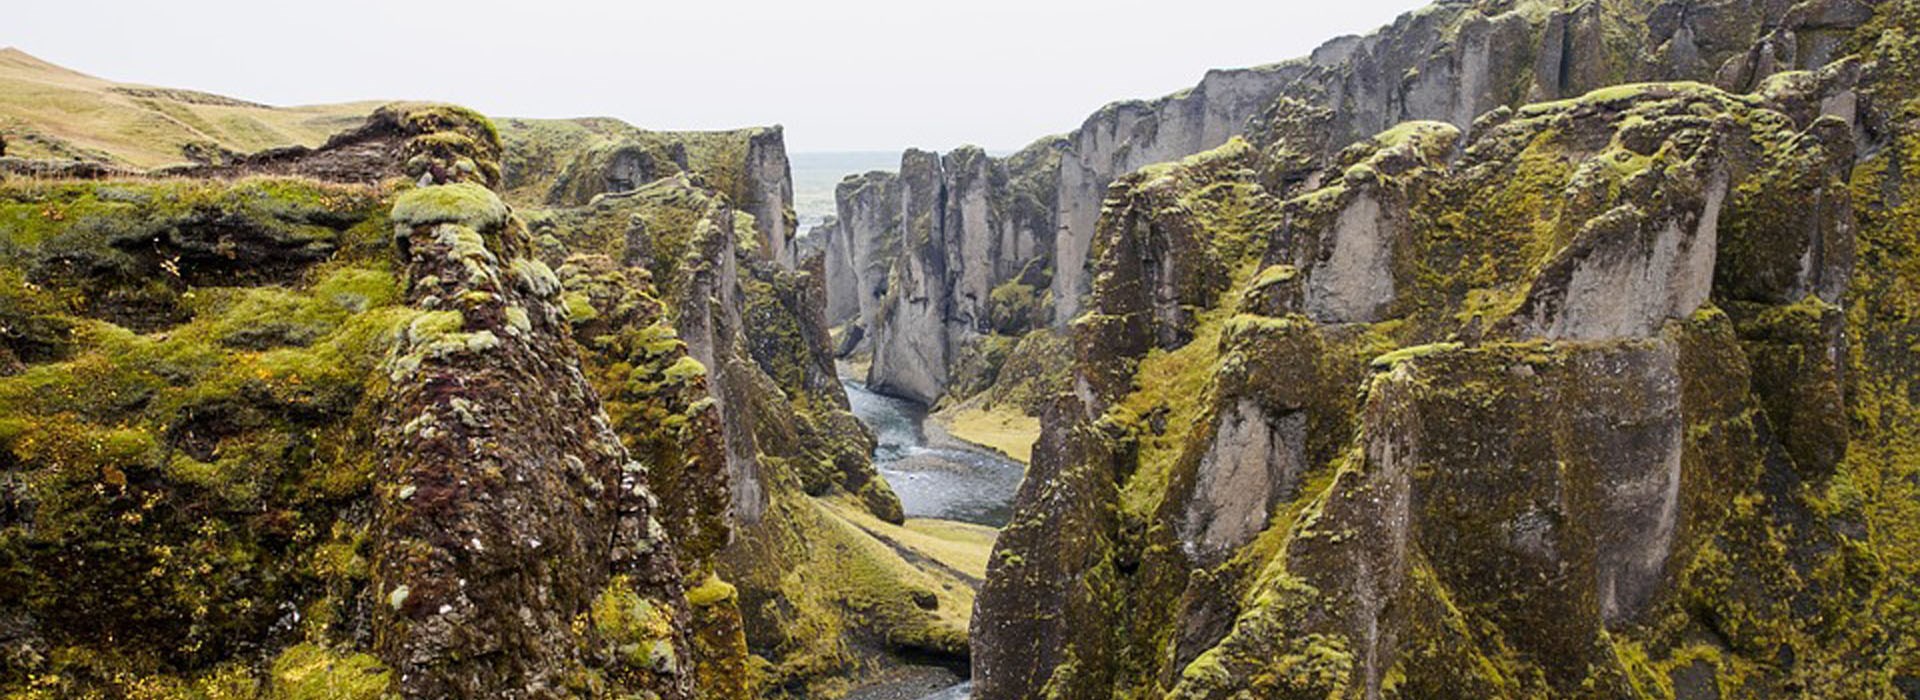 Visiter Le Parc National de Thingvellir - Islande